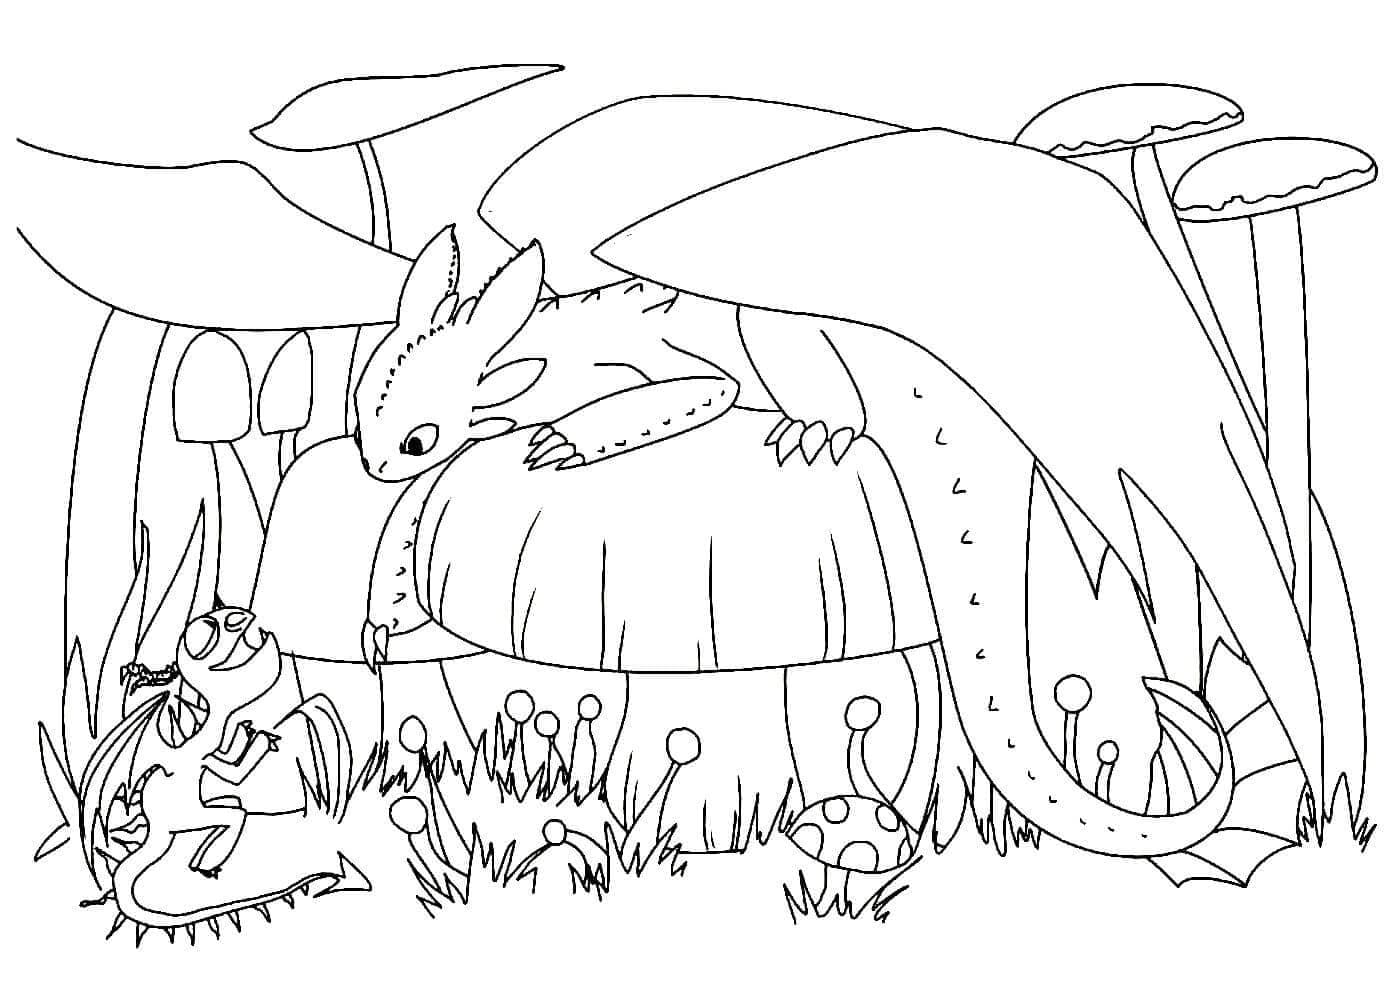 Toothless 13 från How to Train Your Dragon målarbok för att skriva ut och färglägga